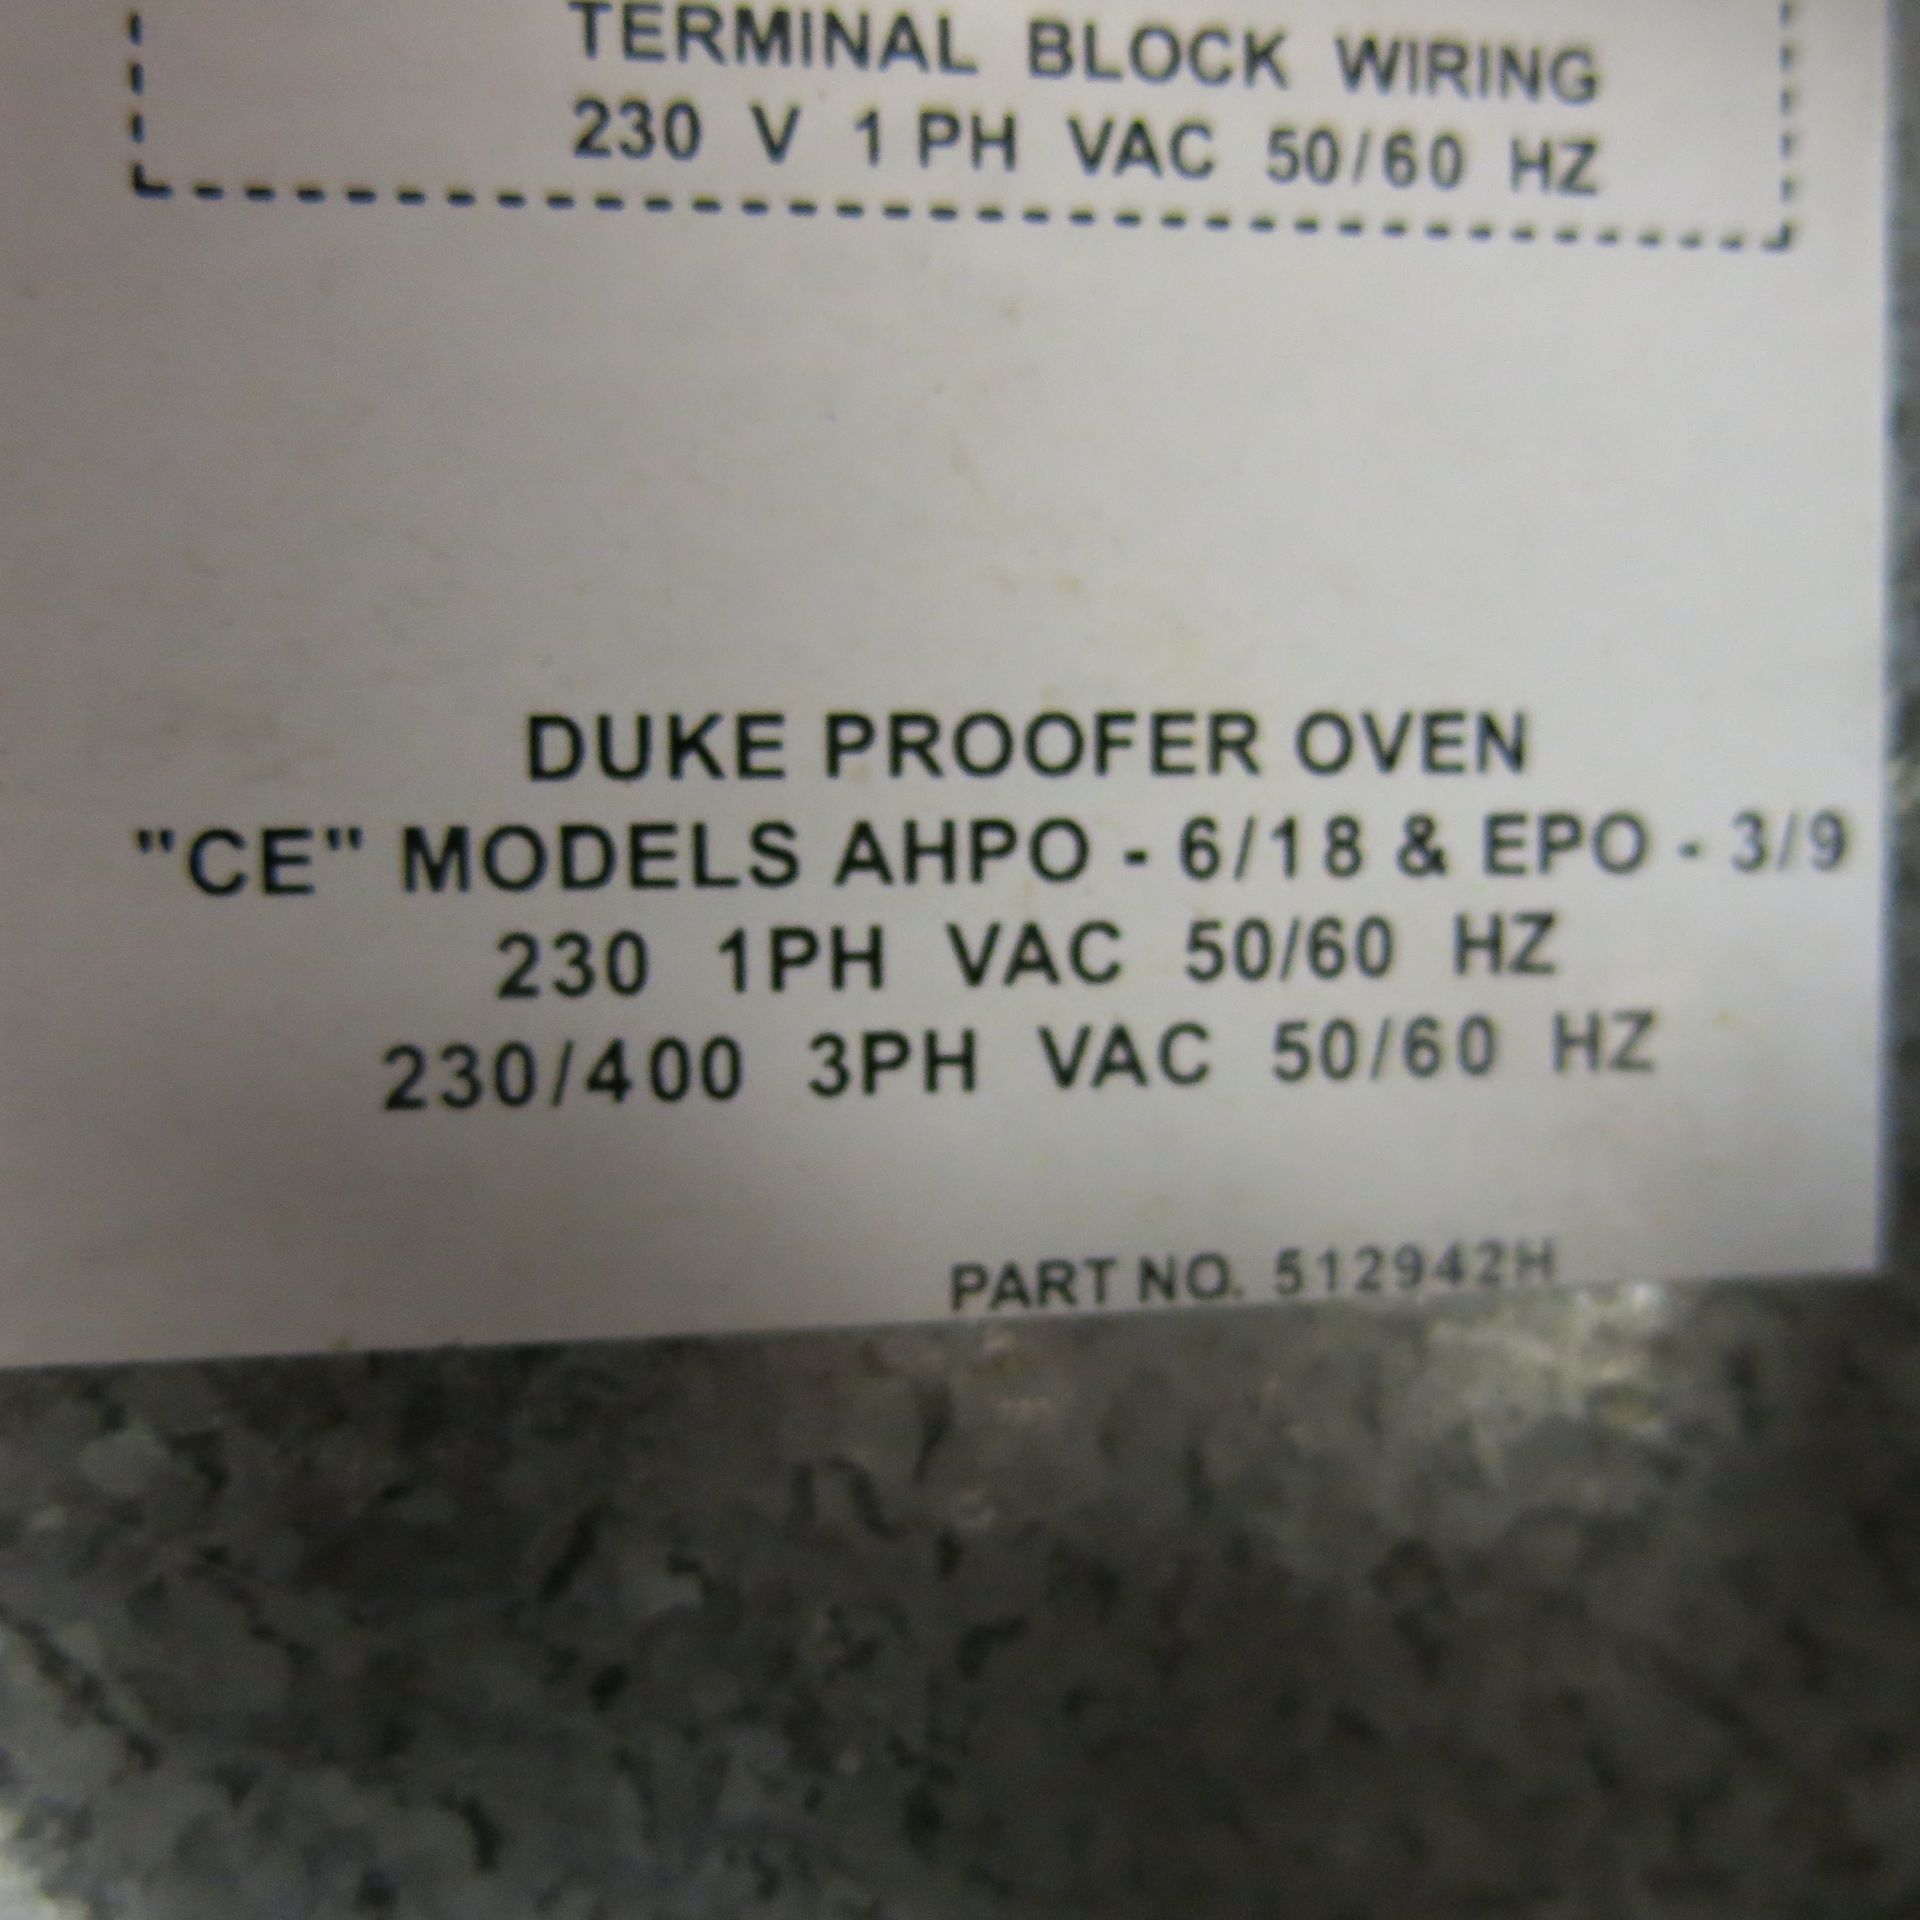 Duke Stainless Steel Commercial 3 Rack Bakery Oven (3 Phase), Model AHPO-618, S/N 30-JEJB-0194, Over - Image 7 of 8